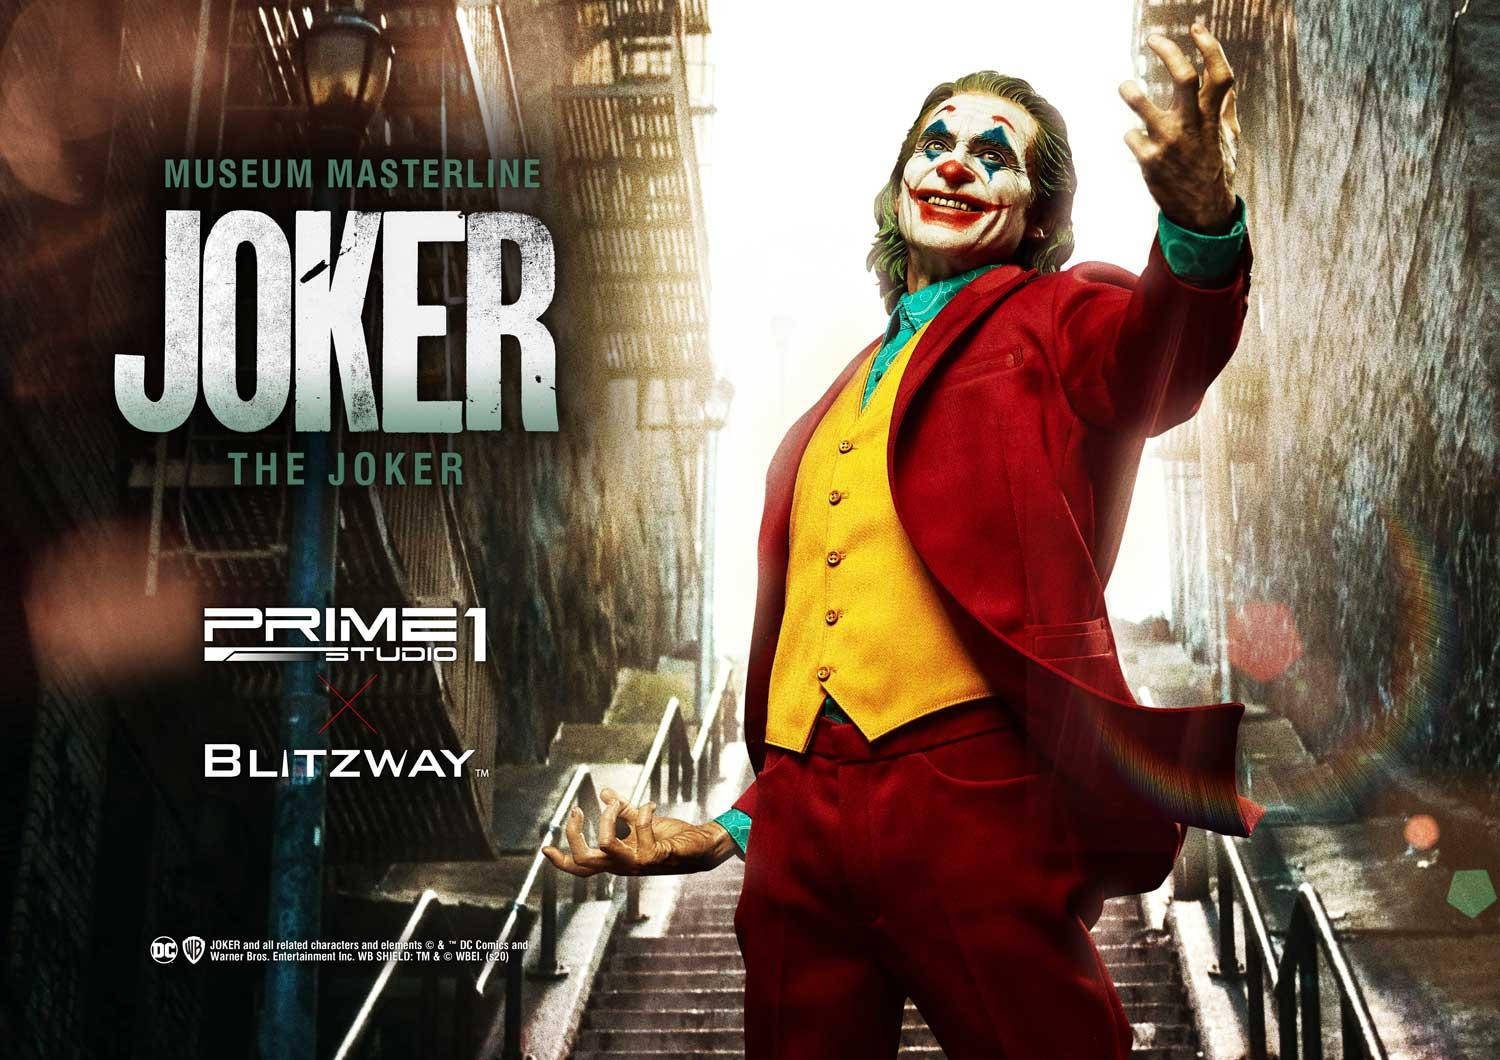 Immagine di Joker, la statua di Blitzway e Prime 1 Studio